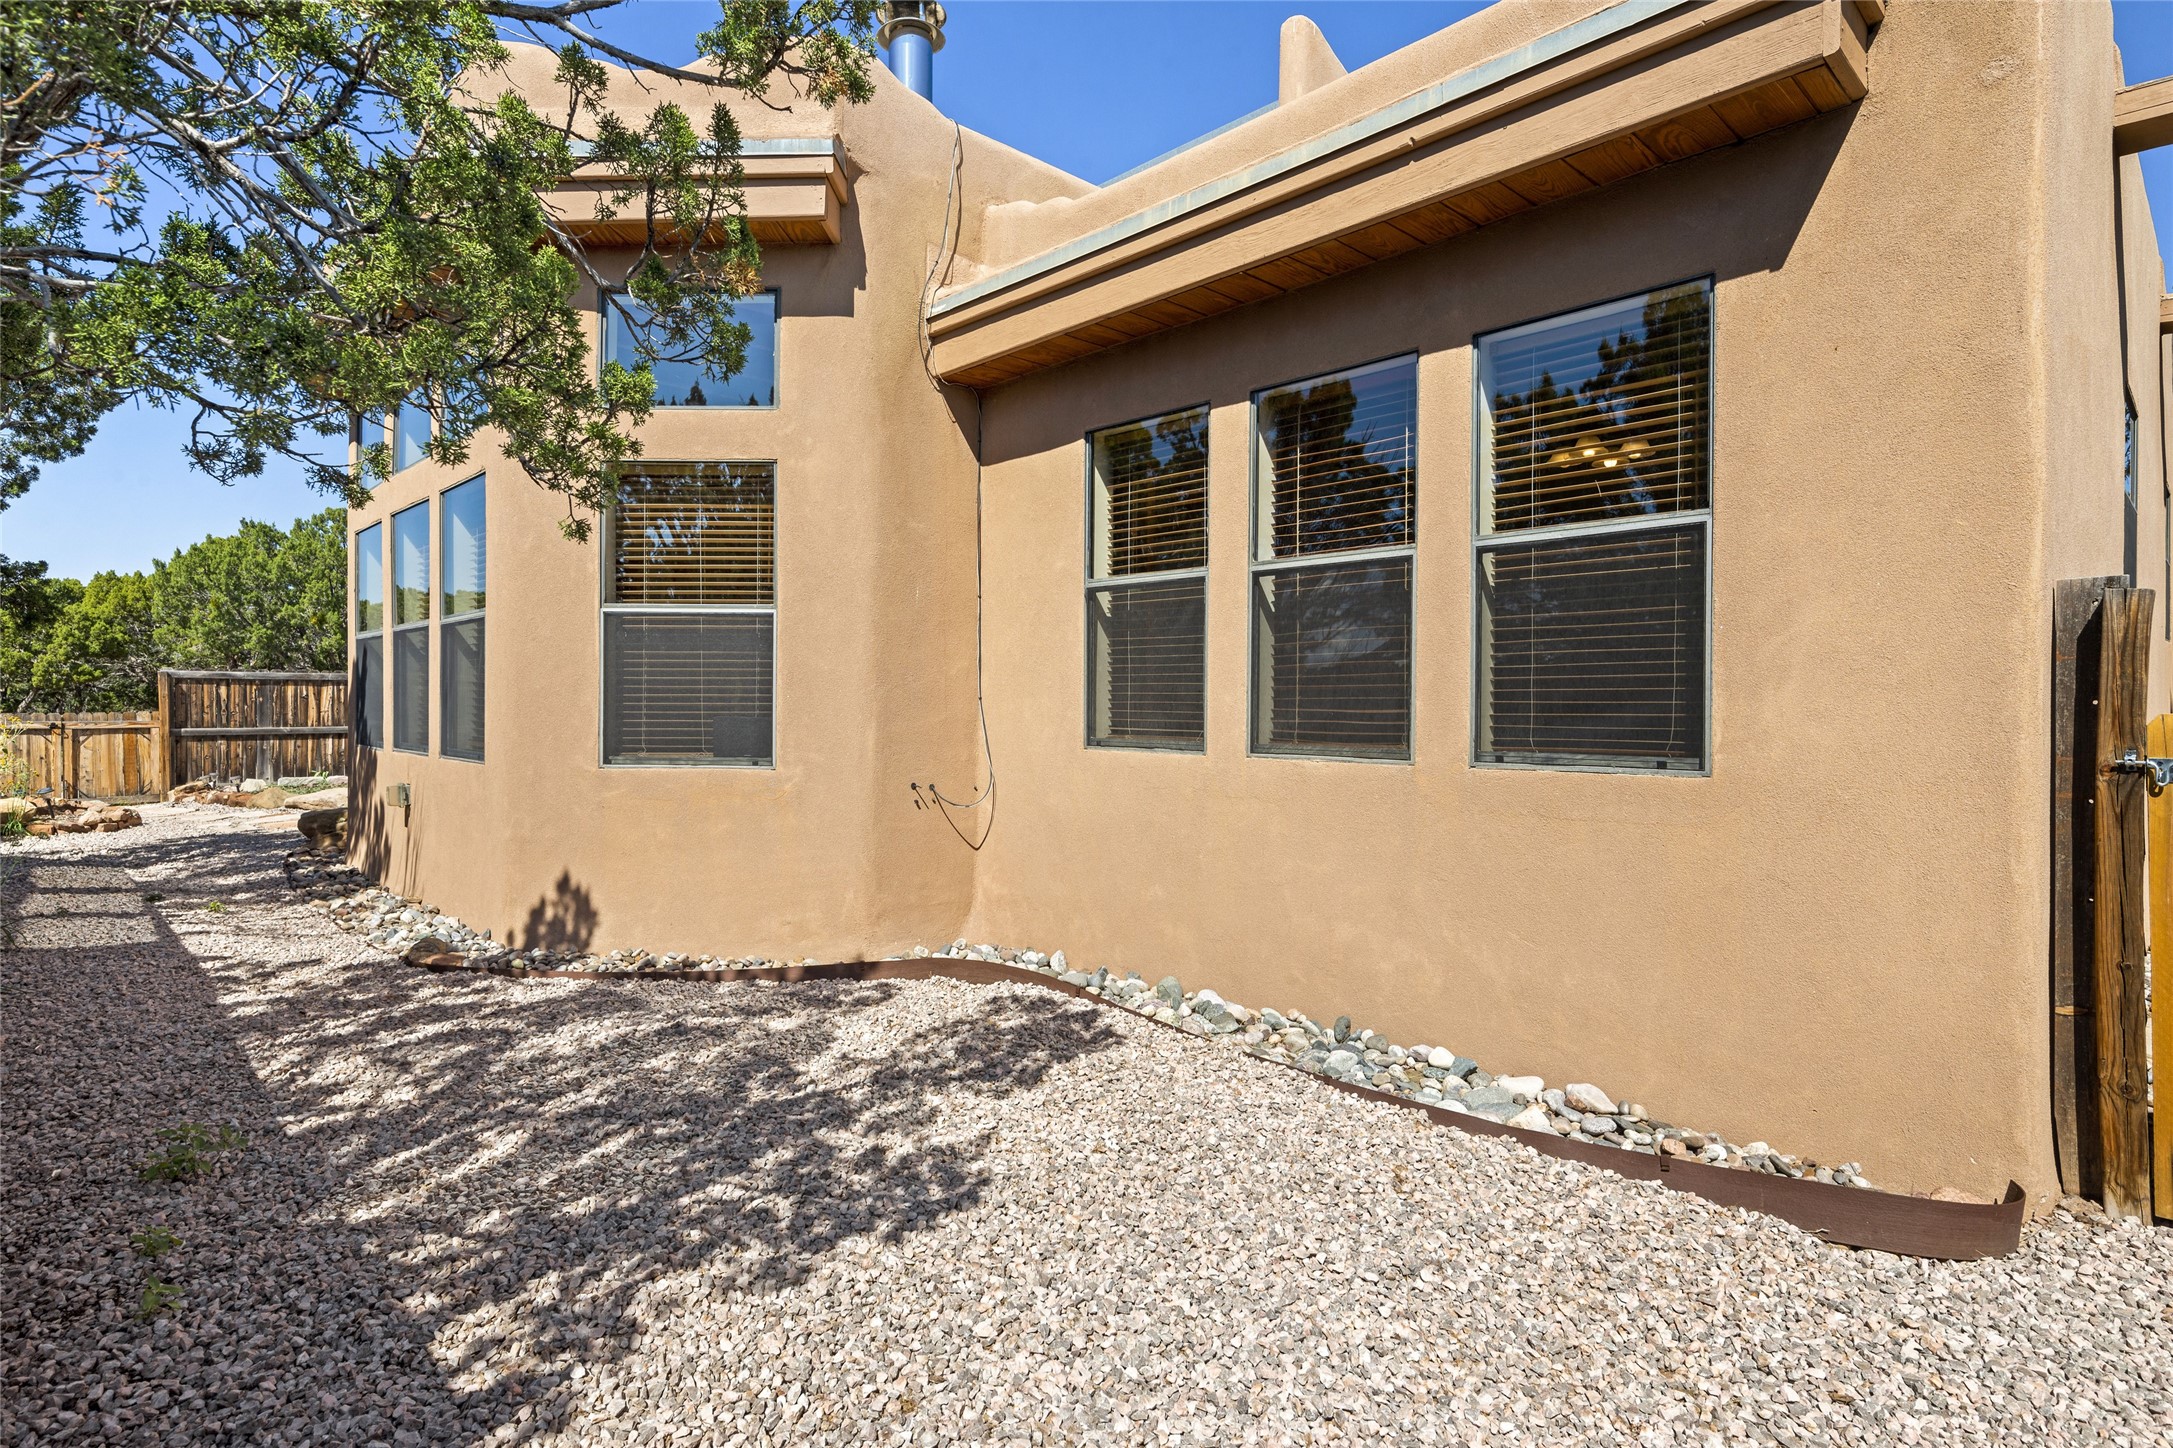 36 Cerrado Loop, Santa Fe, New Mexico 87508, 3 Bedrooms Bedrooms, ,2 BathroomsBathrooms,Residential,For Sale,36 Cerrado Loop,202232773